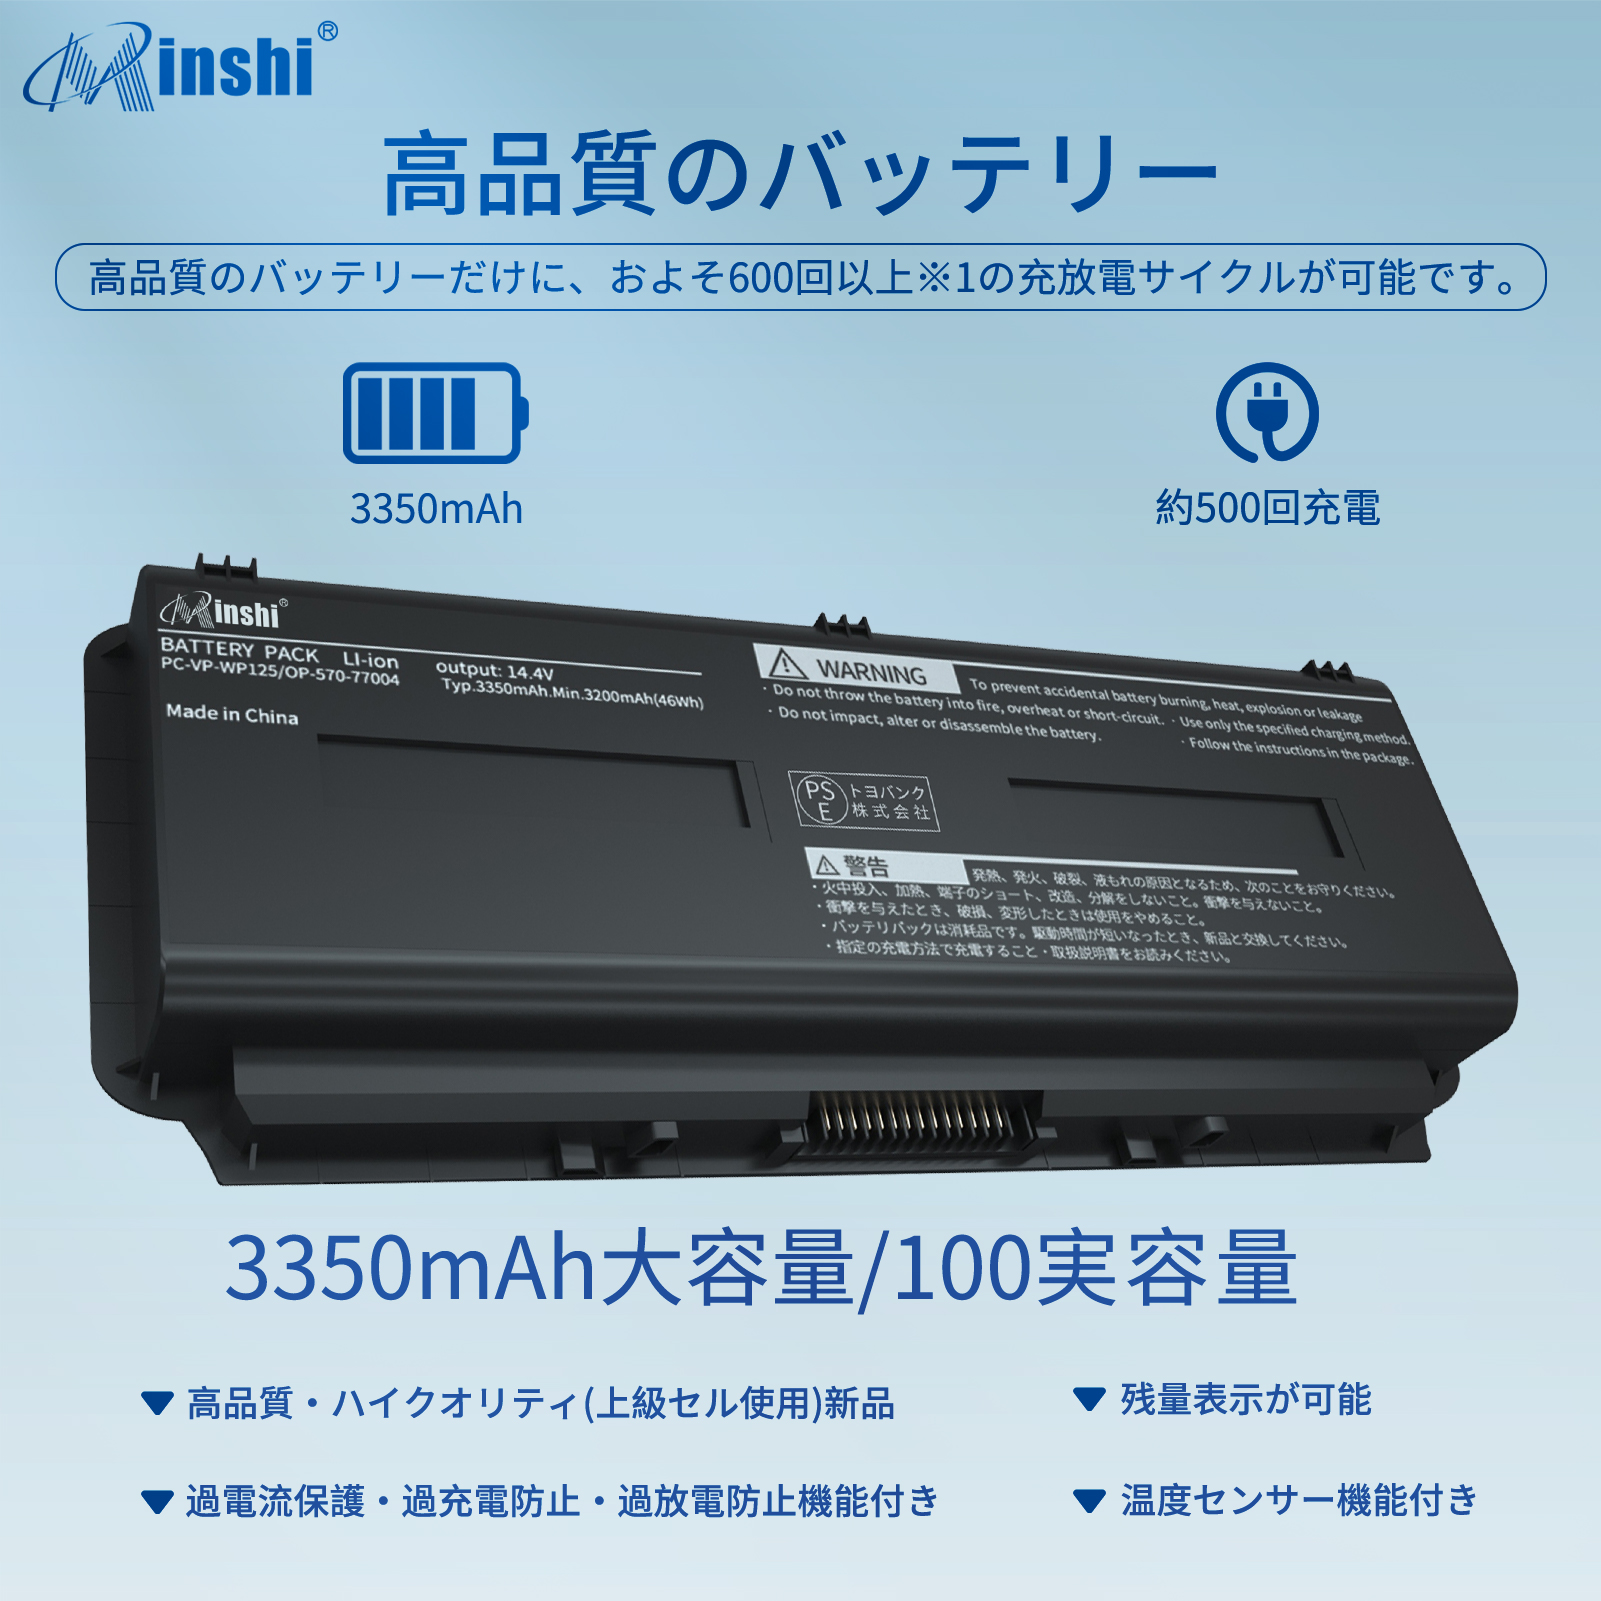 minshi NEC PC-VP-WP135 対応 OP-570-77018 互換バッテリー 2250mAh PSE認定済 高品質交換用バッテリー